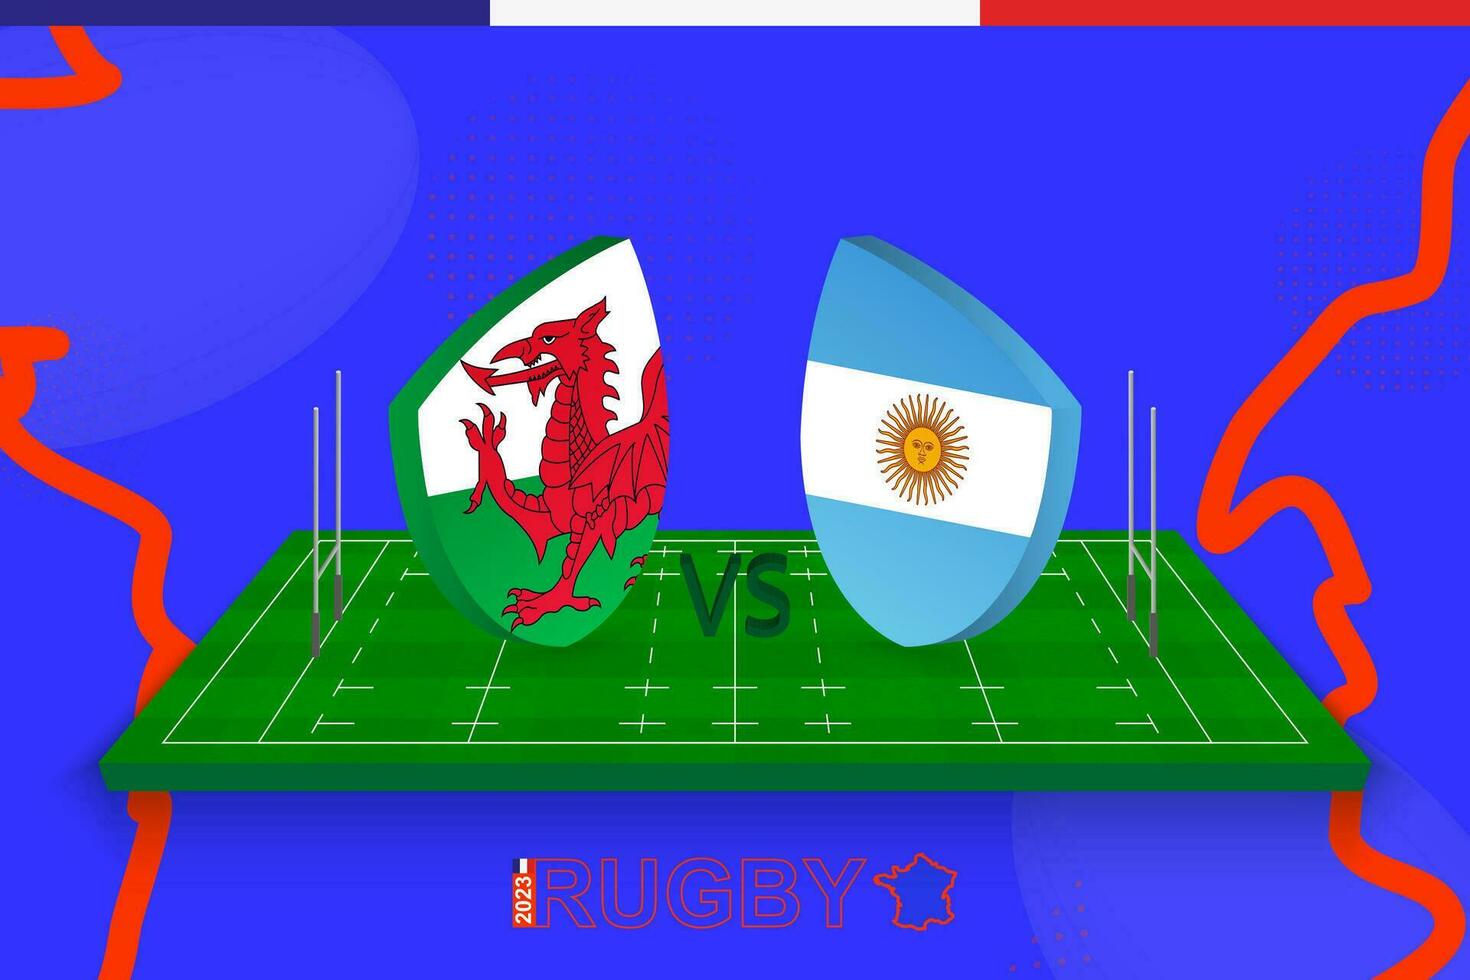 rugby equipo Gales vs argentina en rugby campo. rugby estadio en resumen antecedentes para cuartos de final de internacional campeonato. vector